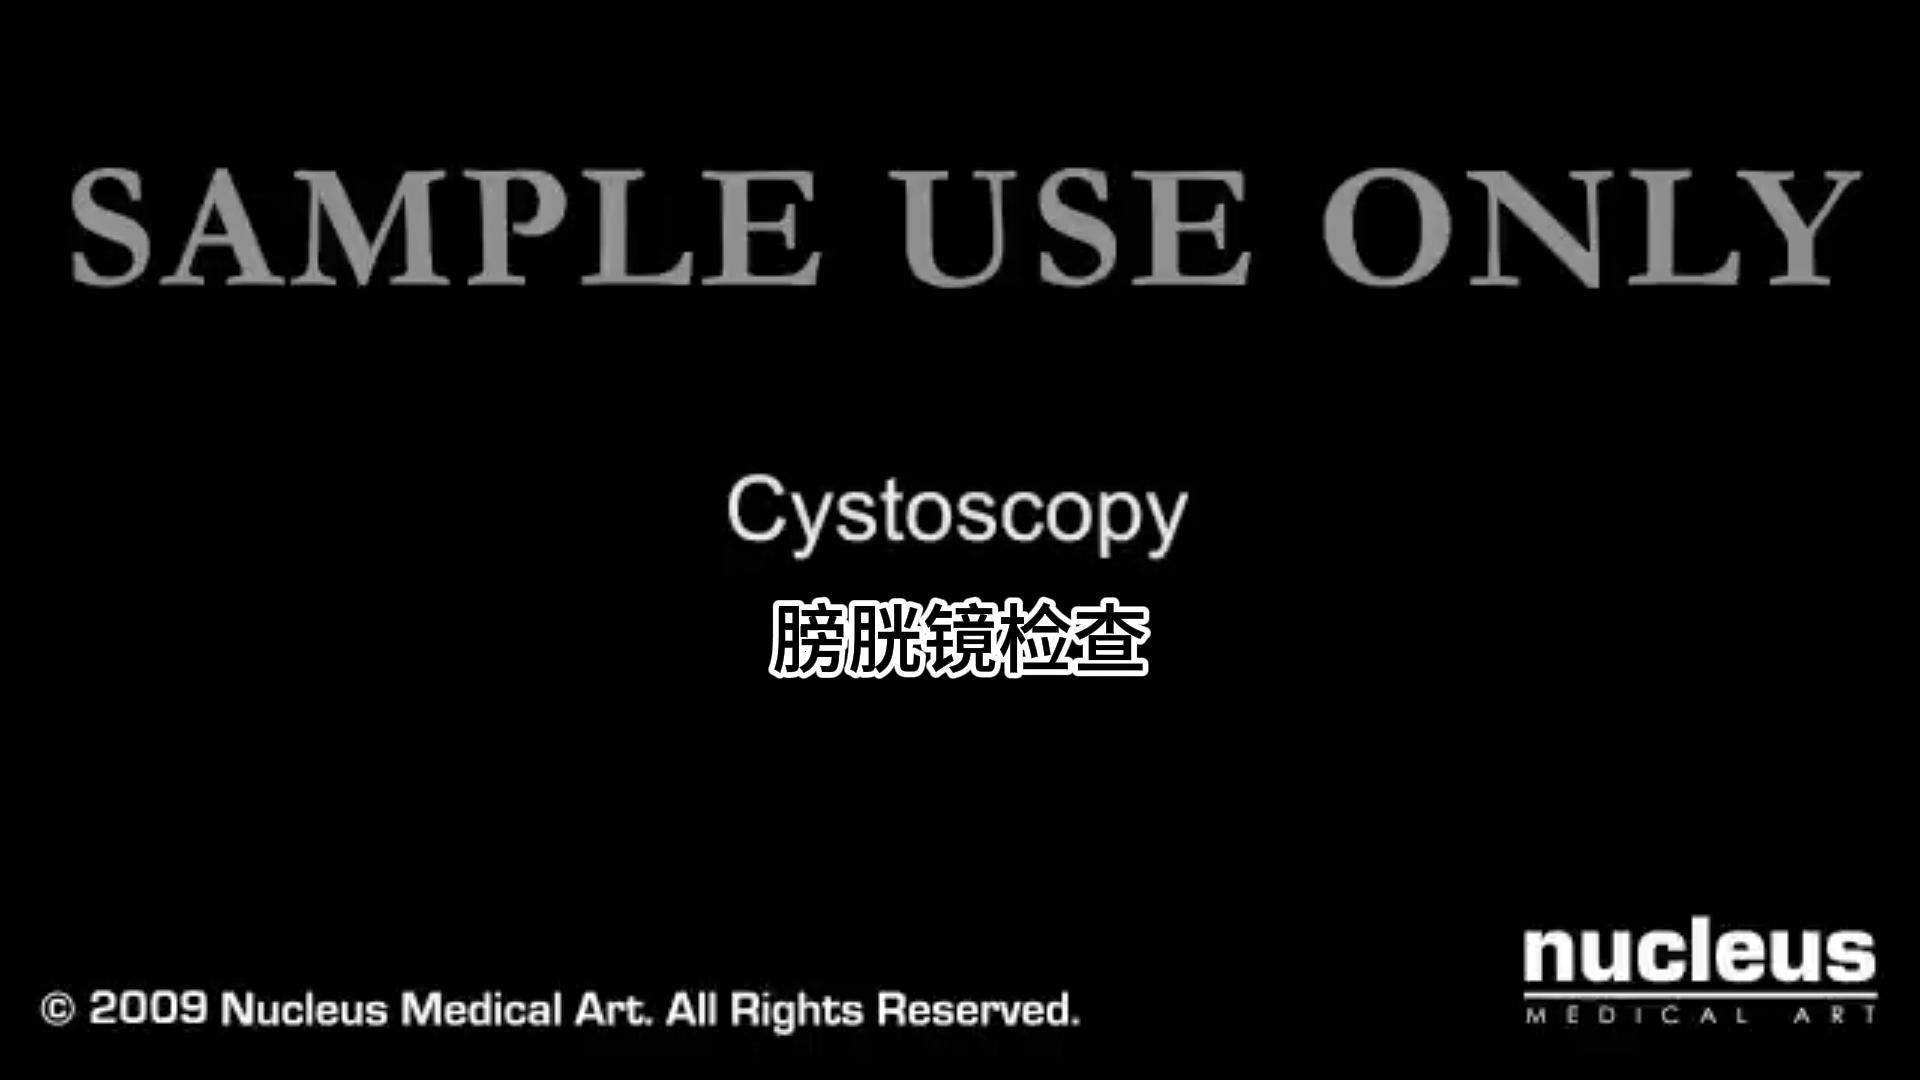 Todo el proceso y propósito de la cistoscopia.